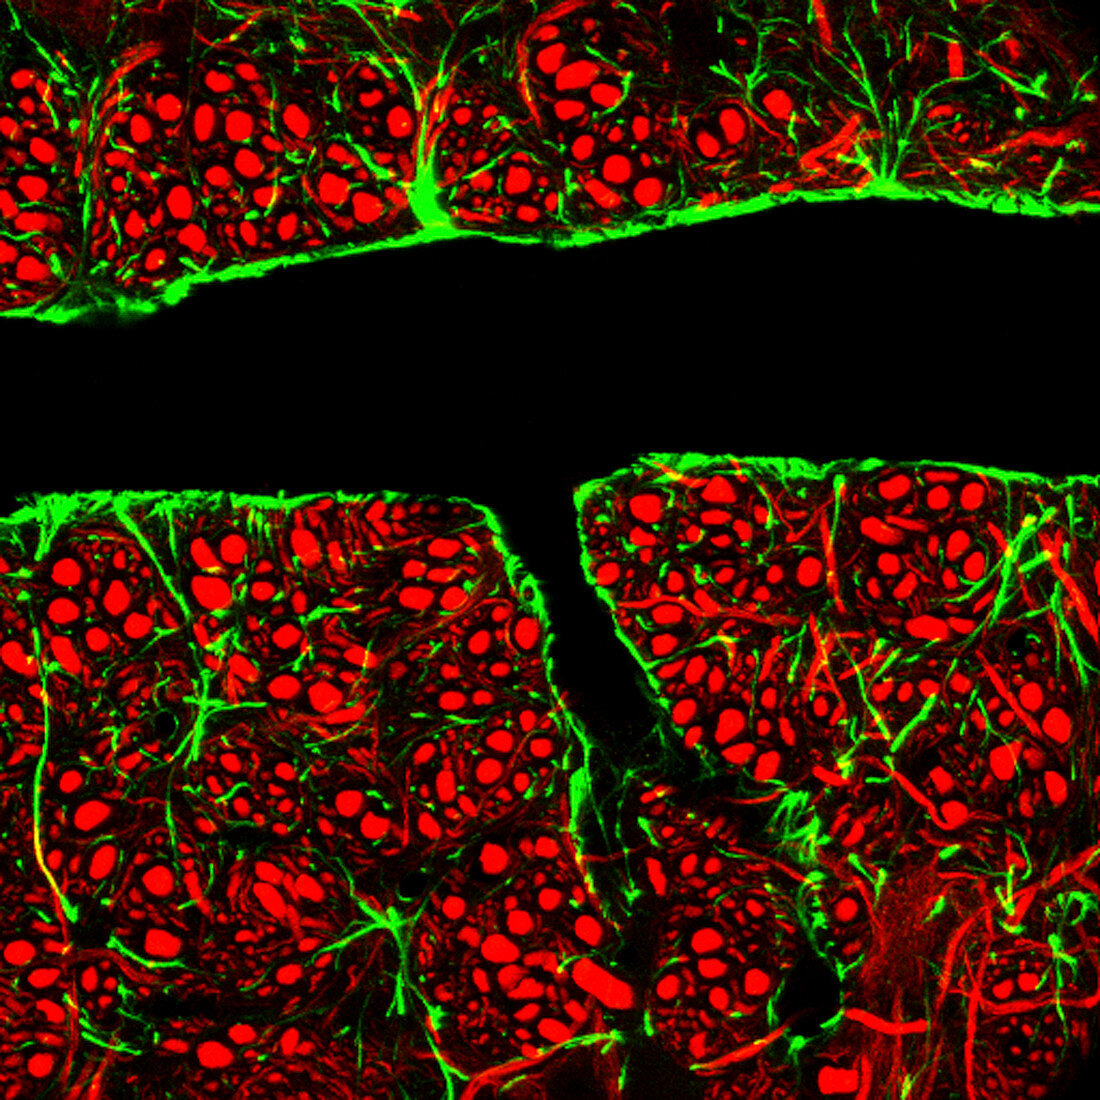 Blood-brain barrier,light micrograph